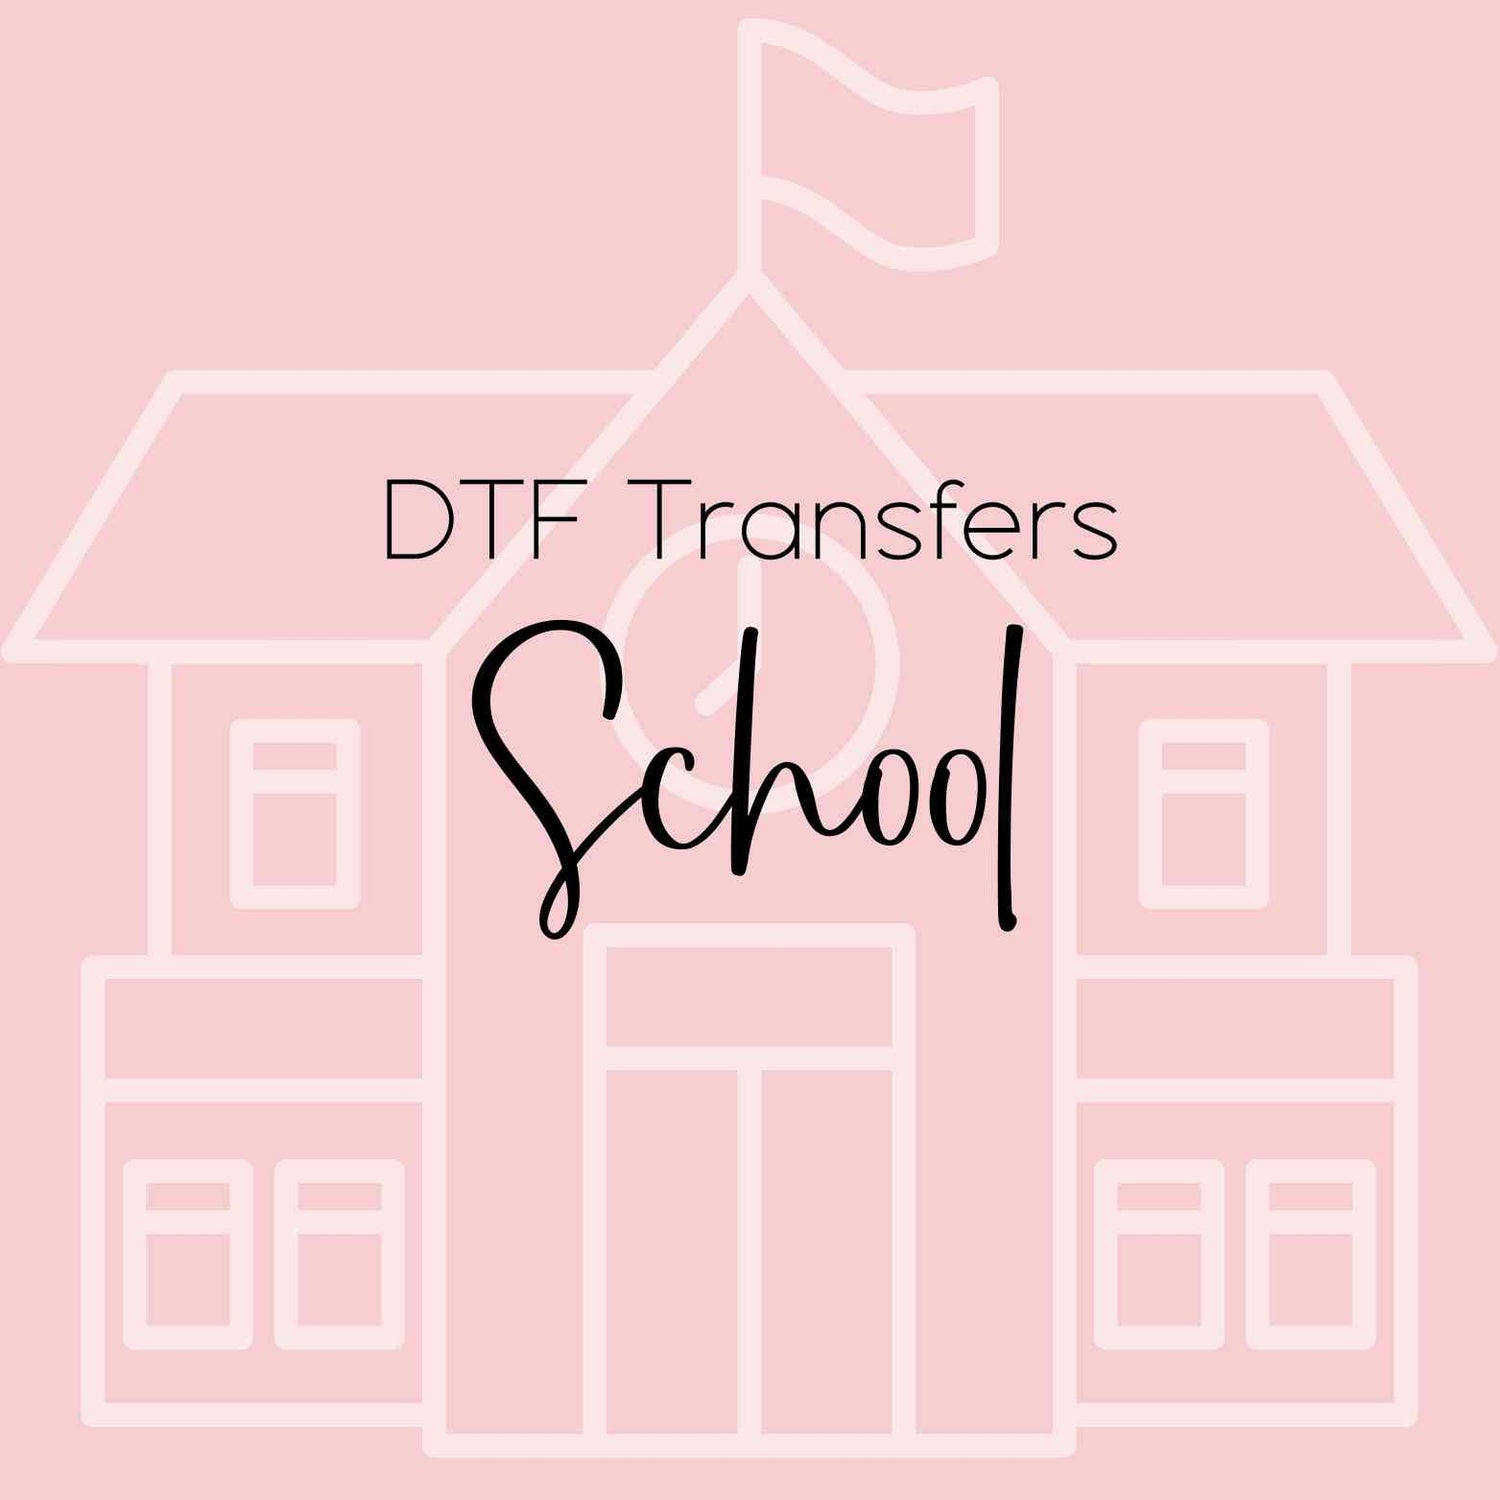 School DTF Transfers